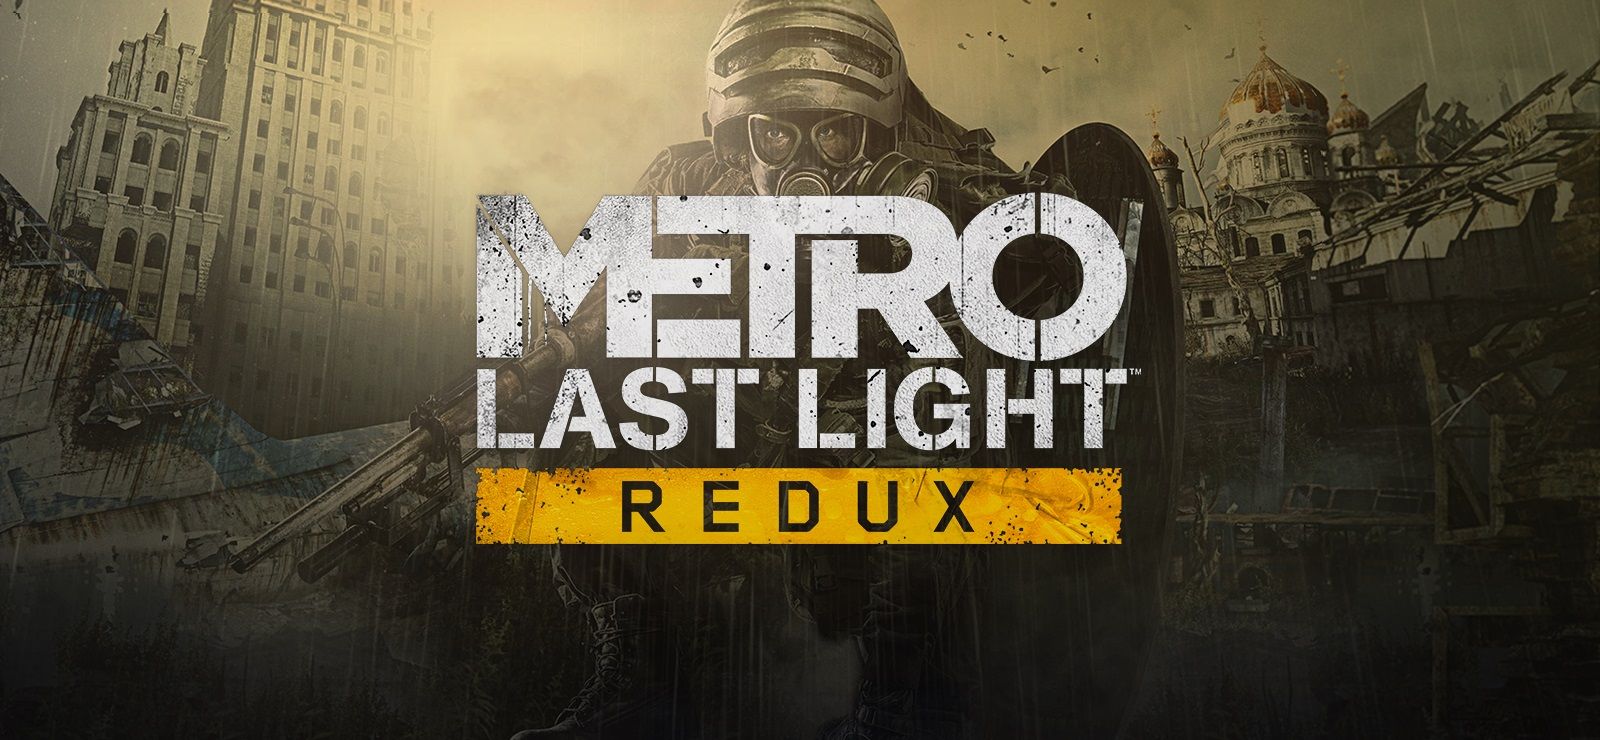 Metro: Last Light Redux và For The King đang miễn phí, các bạn muốn giải cứu thế giới bằng đao kiếm hay súng ống?